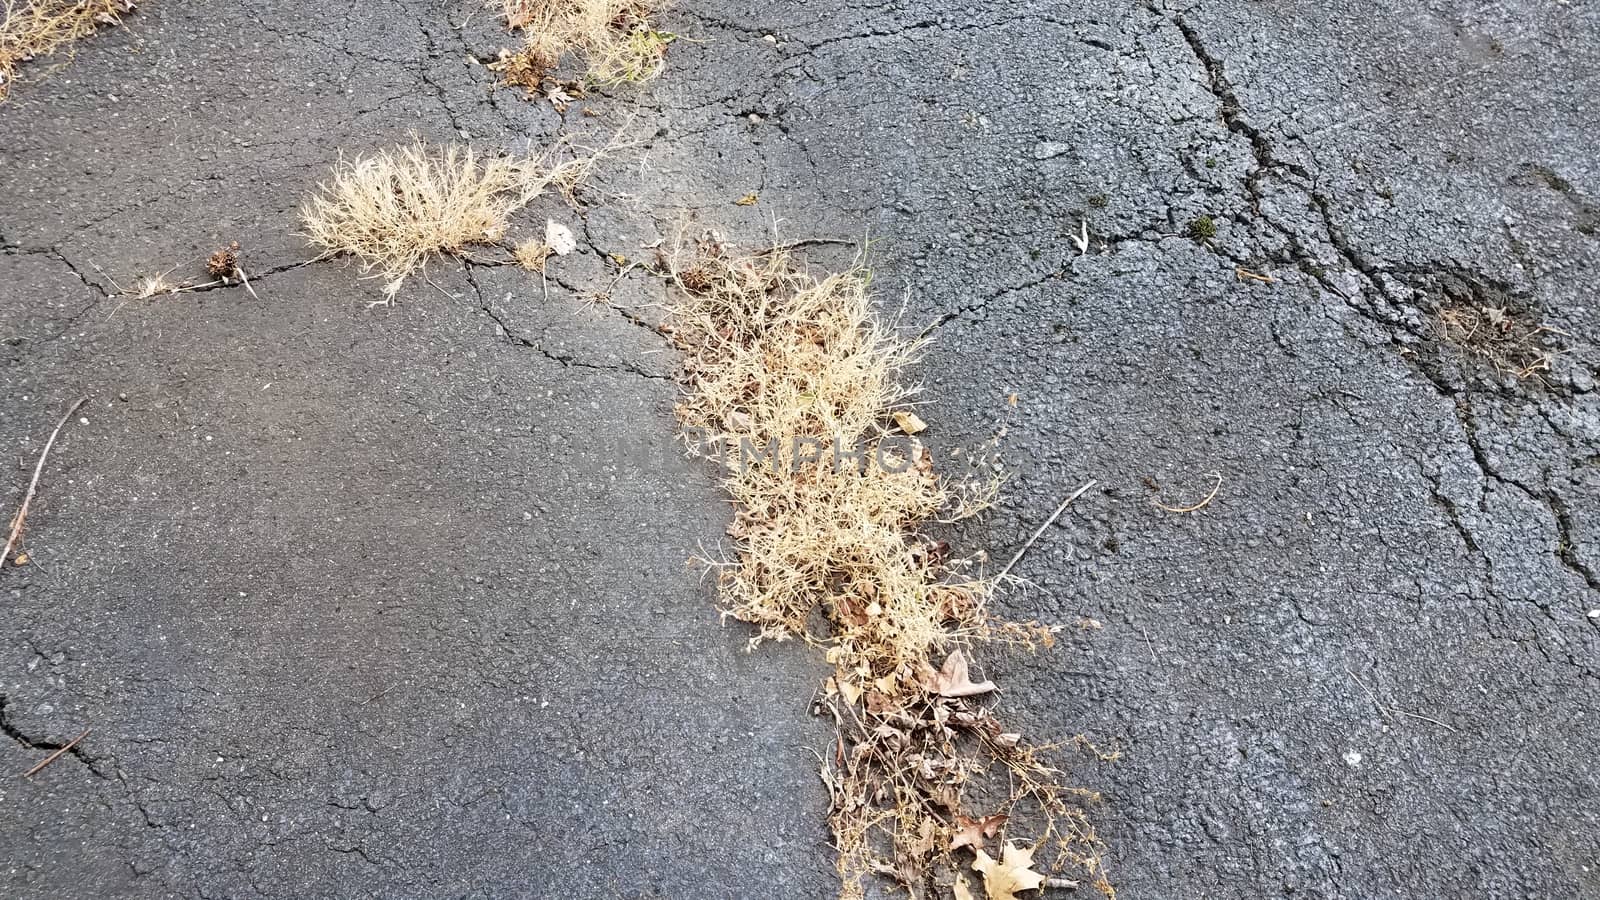 brown dead weeds in cracks in asphalt by stockphotofan1